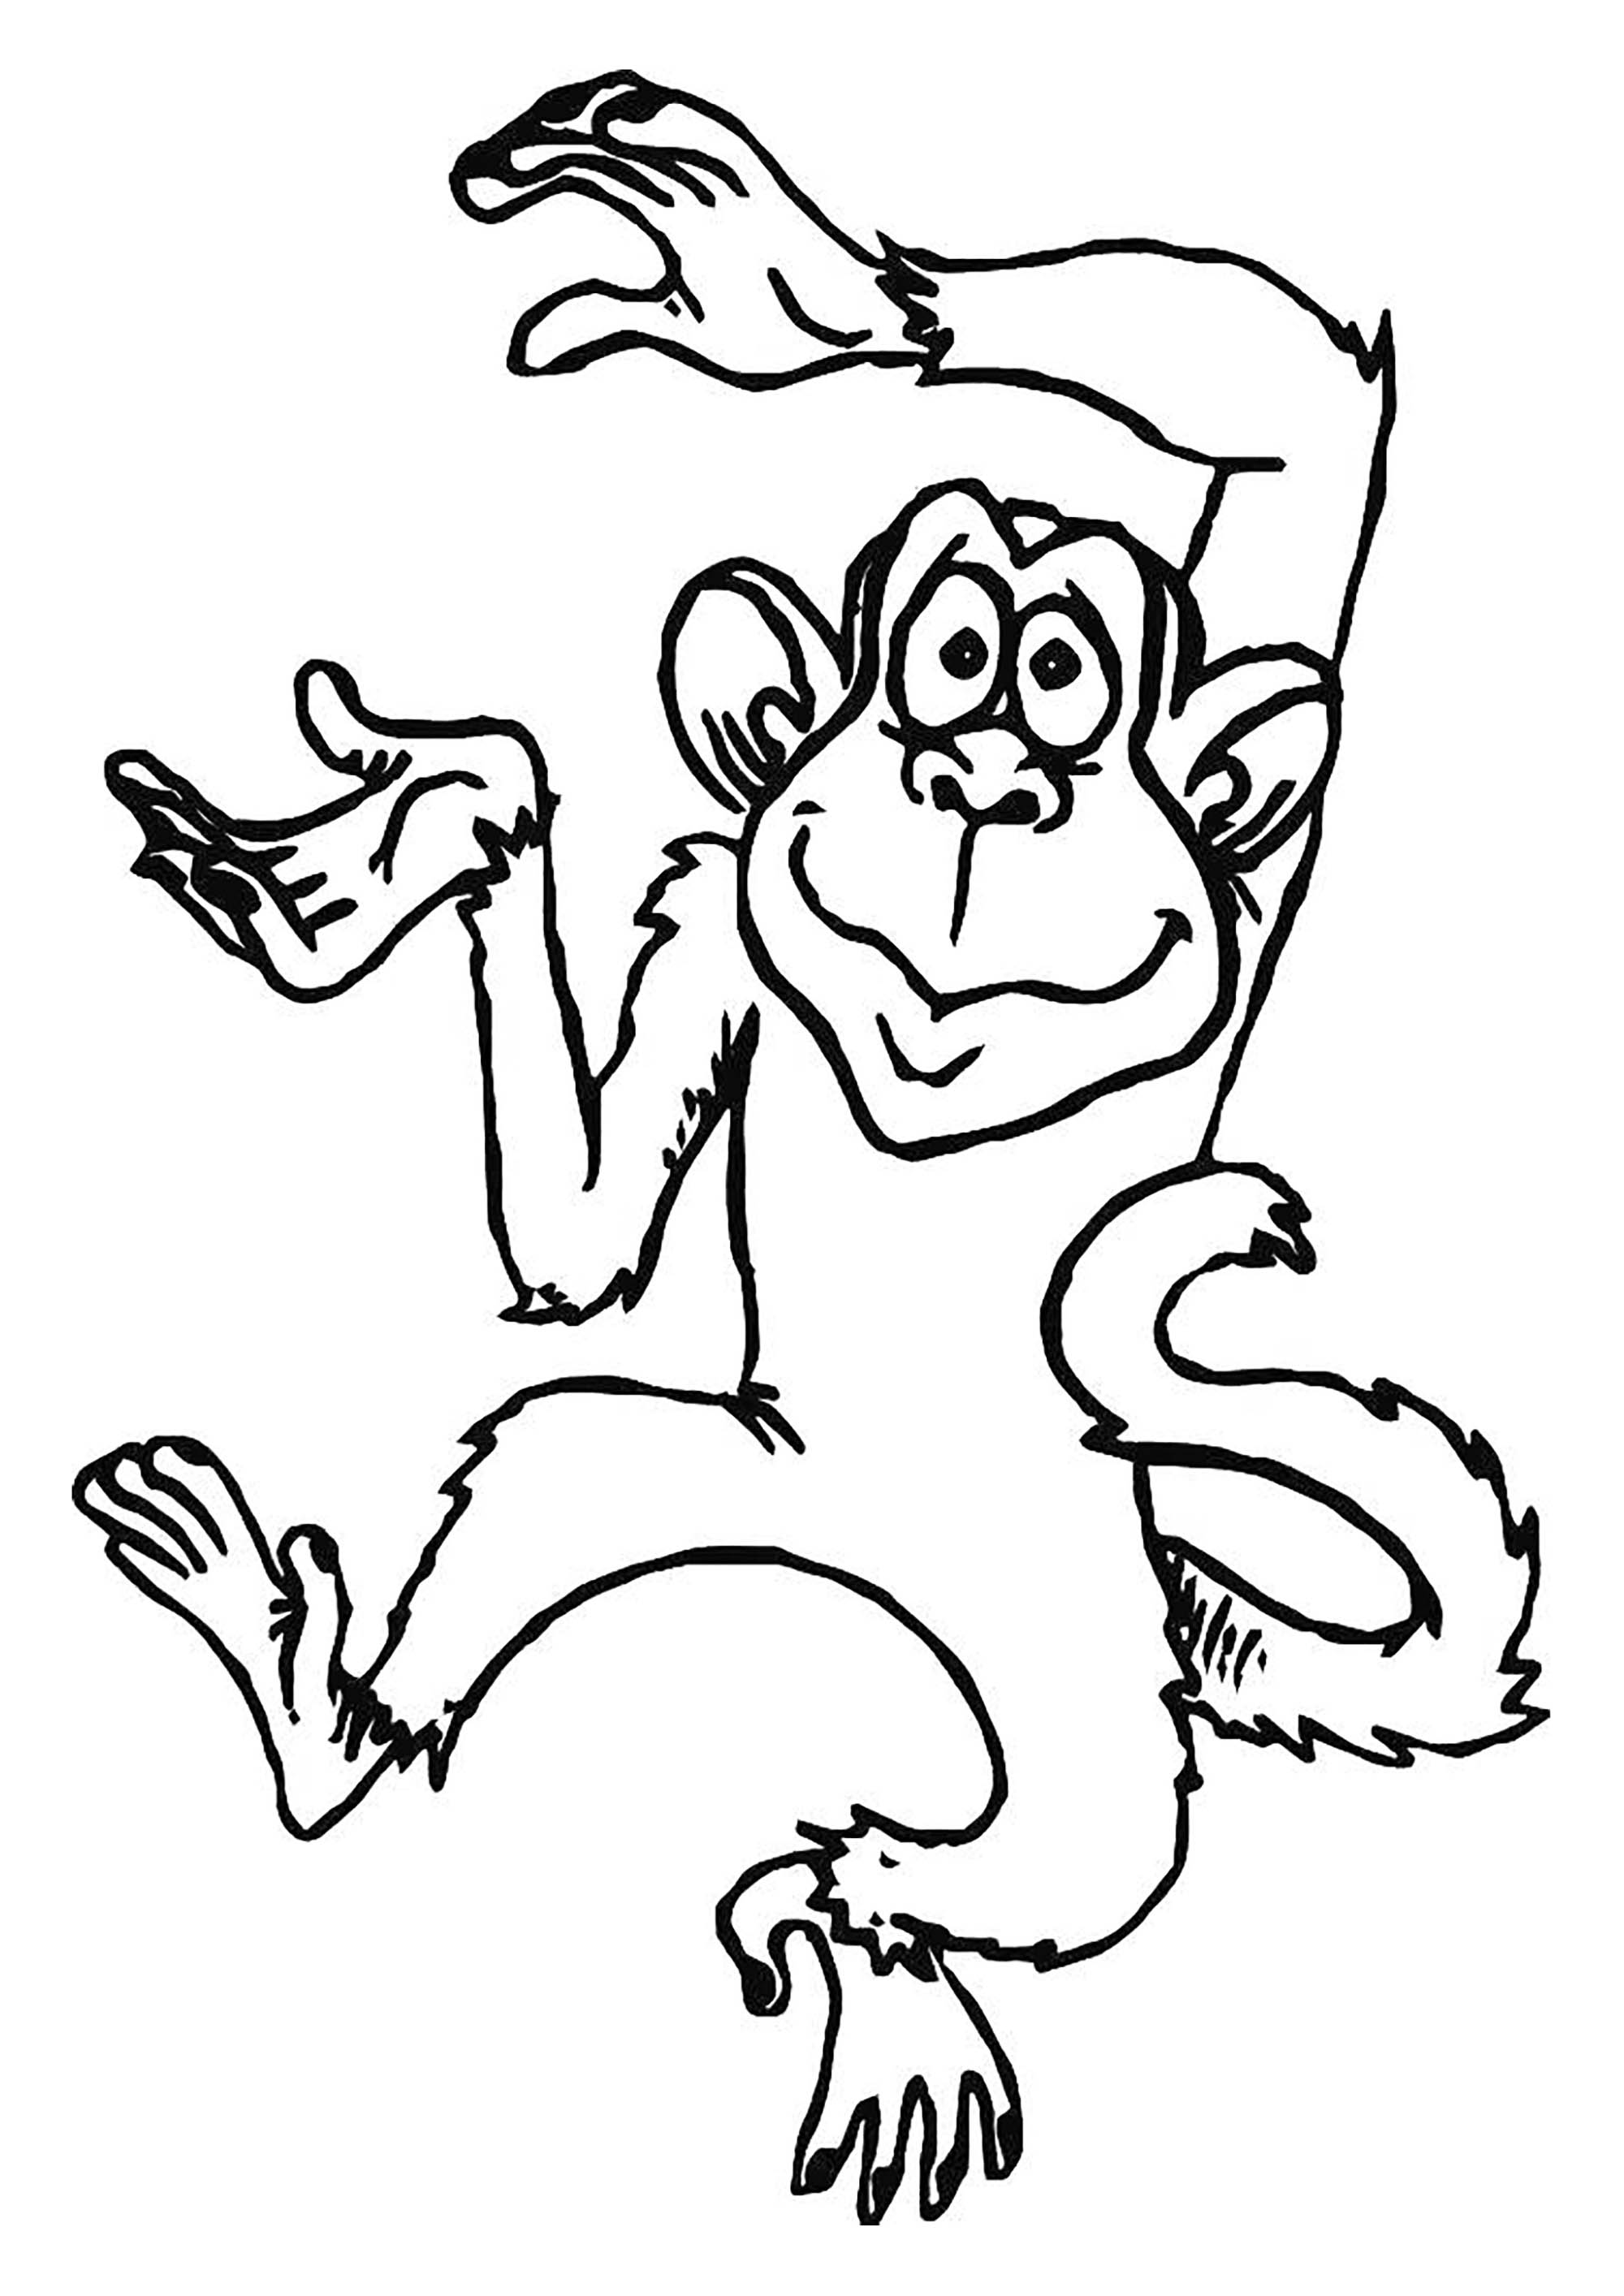 Imagem de macaco para imprimir e colorir